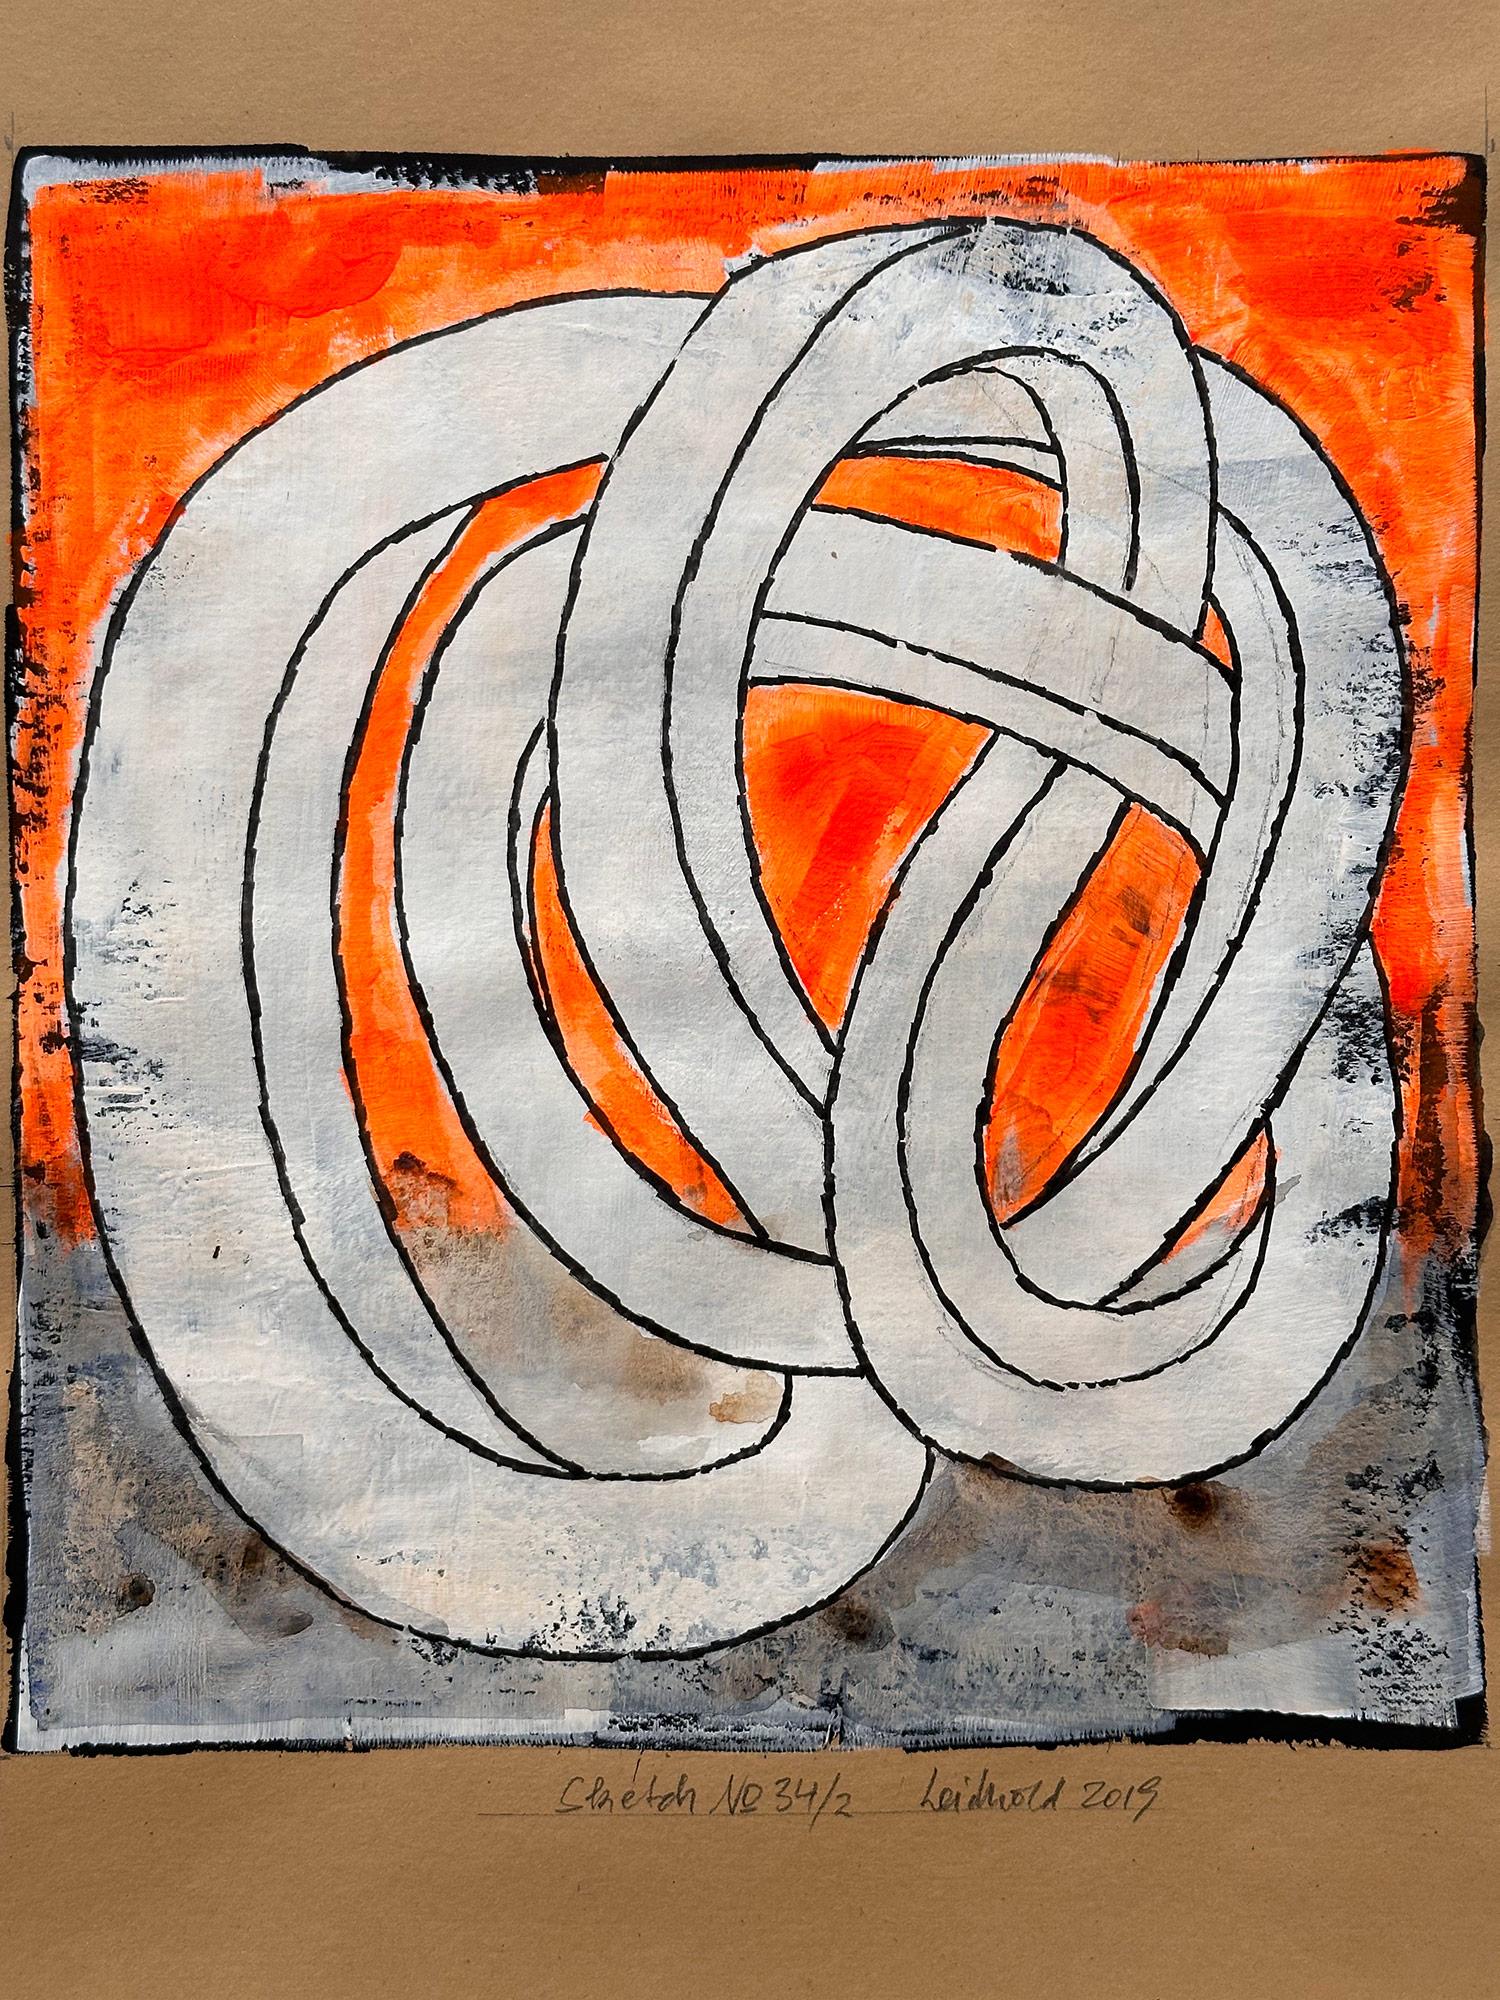 „Sketch No.34/2“ Abstraktes, gegenständliches, kinetisches Knotengemälde auf Papier – Painting von Wolfgang Leidhold